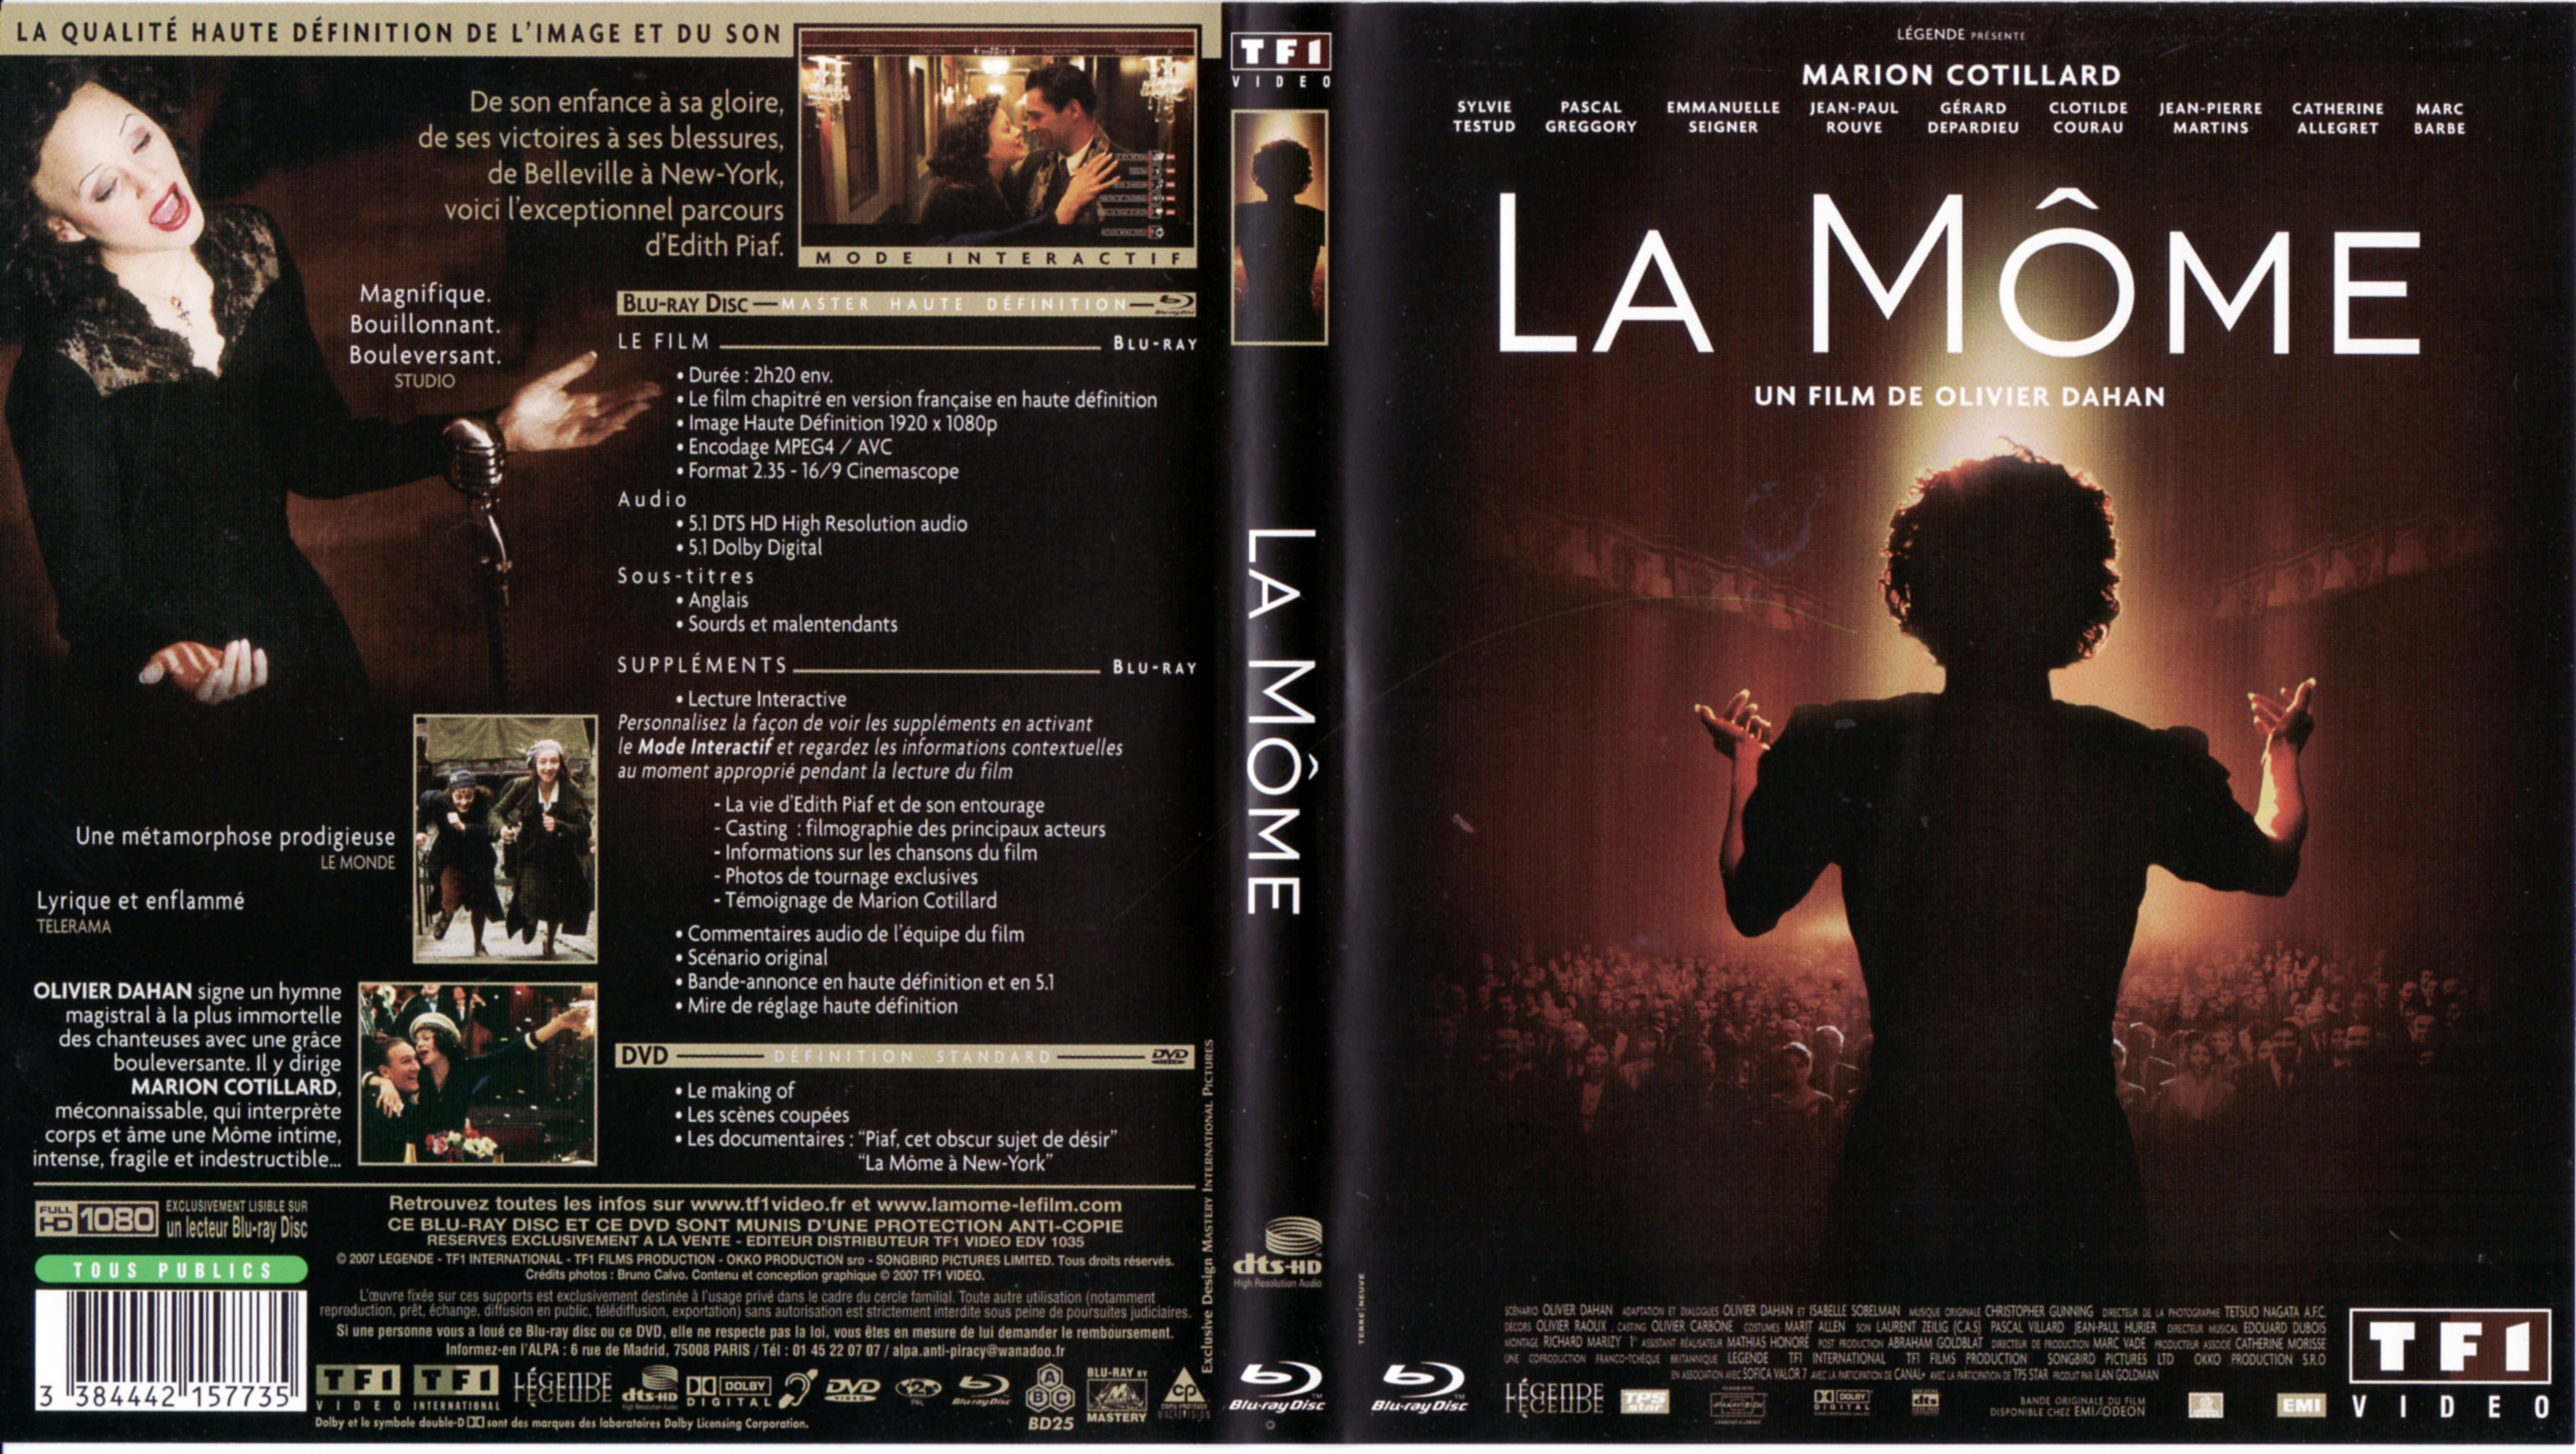 Jaquette DVD La mme (BLU-RAY)